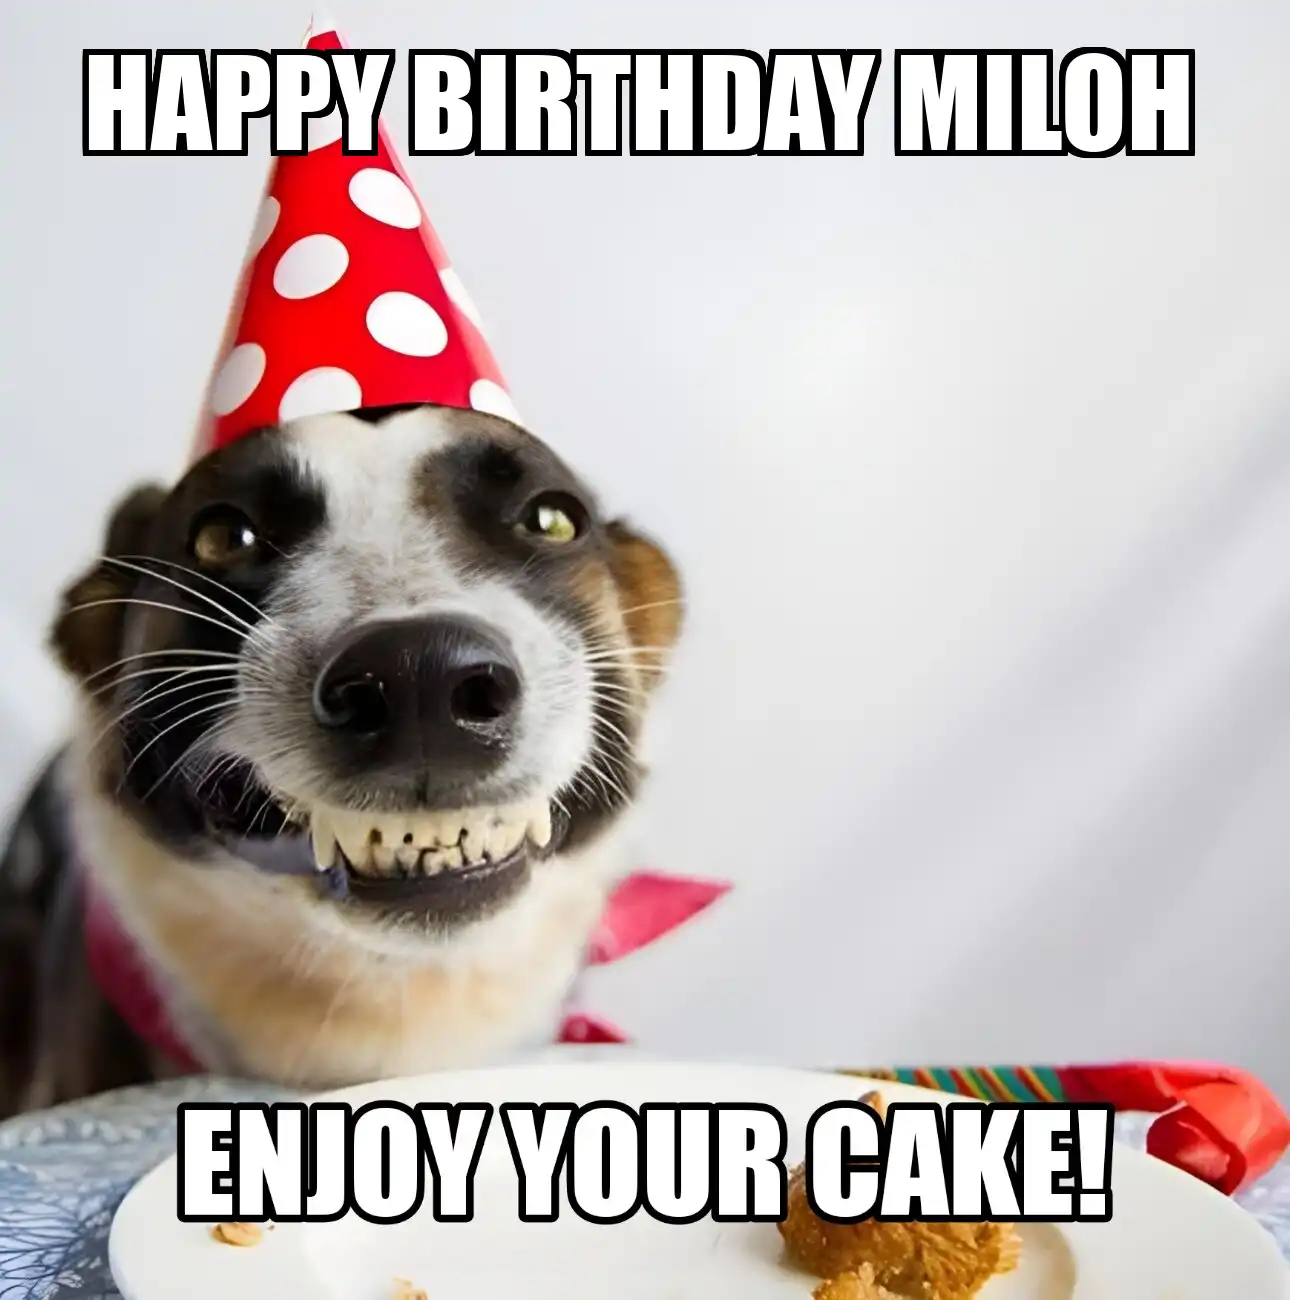 Happy Birthday Miloh Enjoy Your Cake Dog Meme